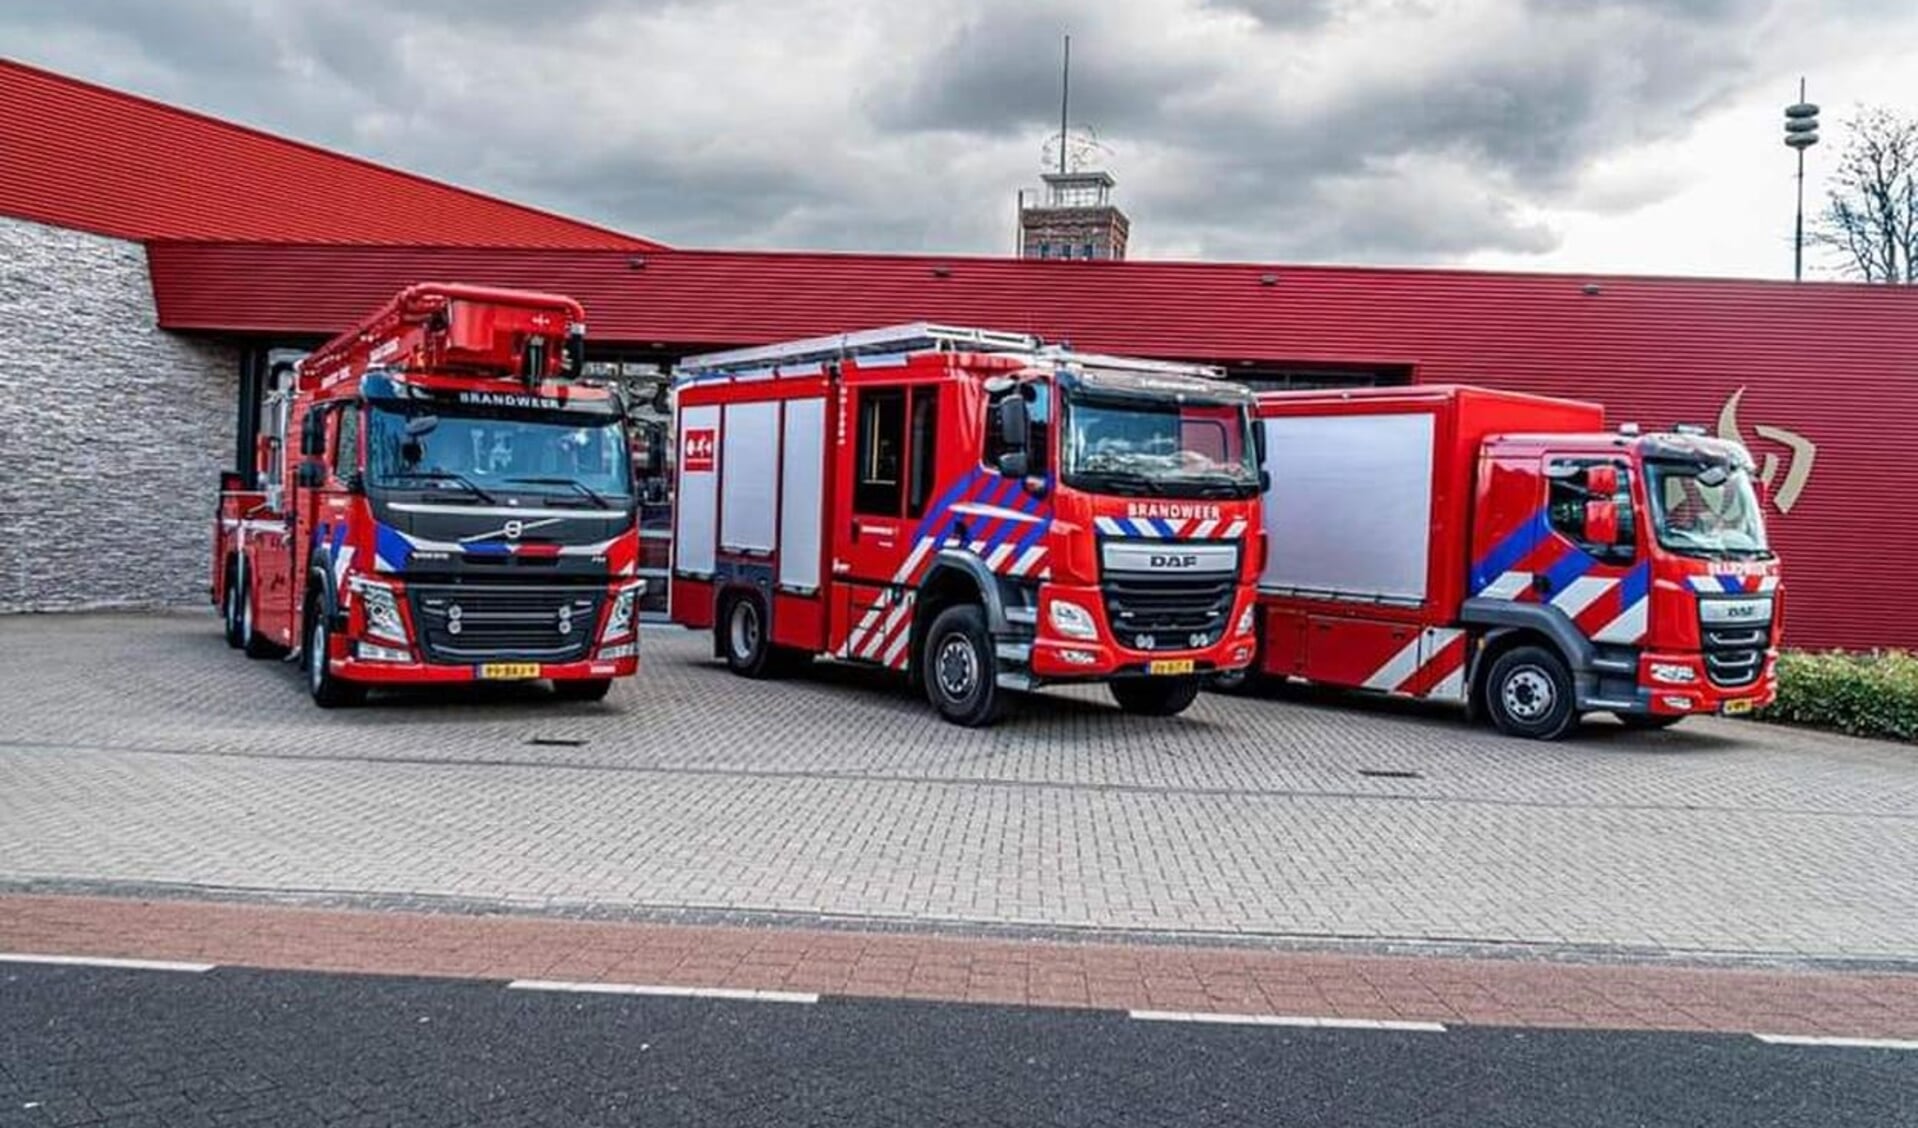 Zaterdag 1 april komen brandweerkorpsen uit verschillende plaatsen naar Valkenswaard voor een vaardigheidstoets. 